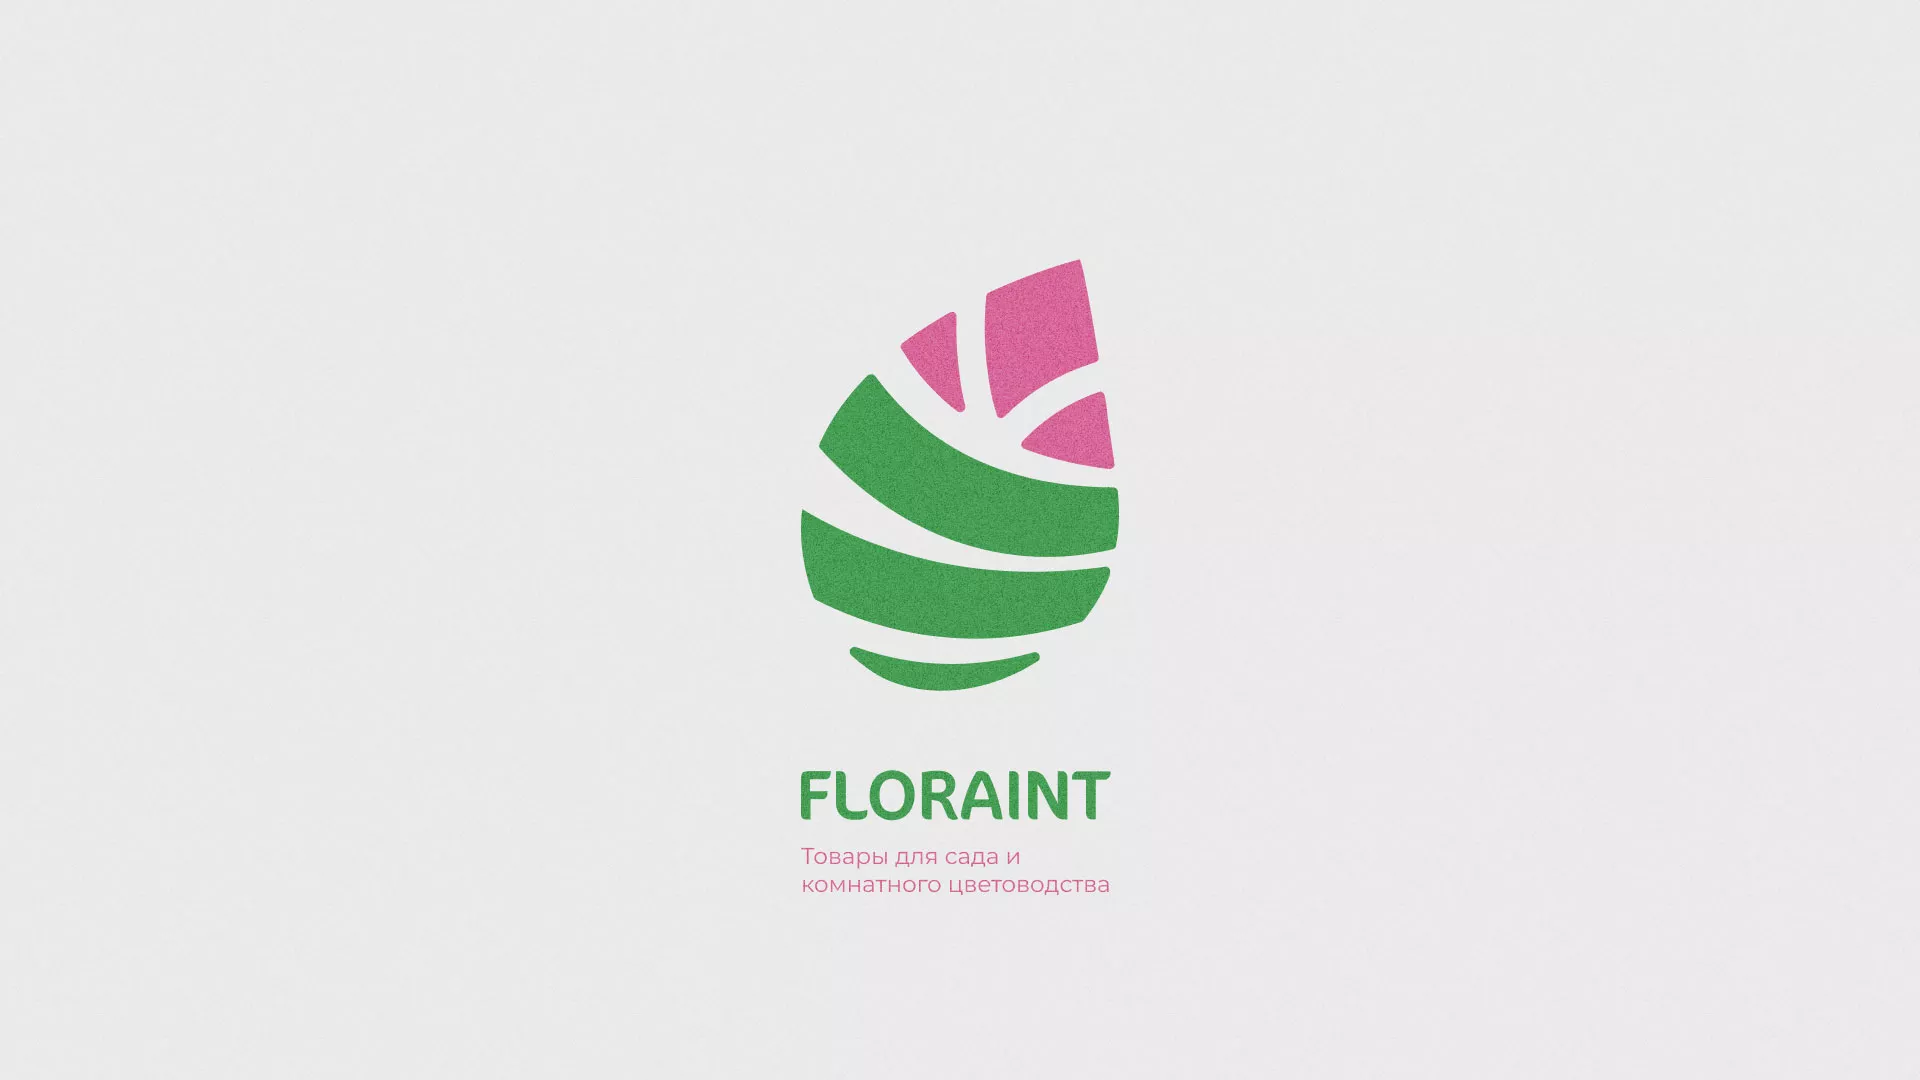 Разработка оформления профиля Instagram для магазина «Floraint» в Осе